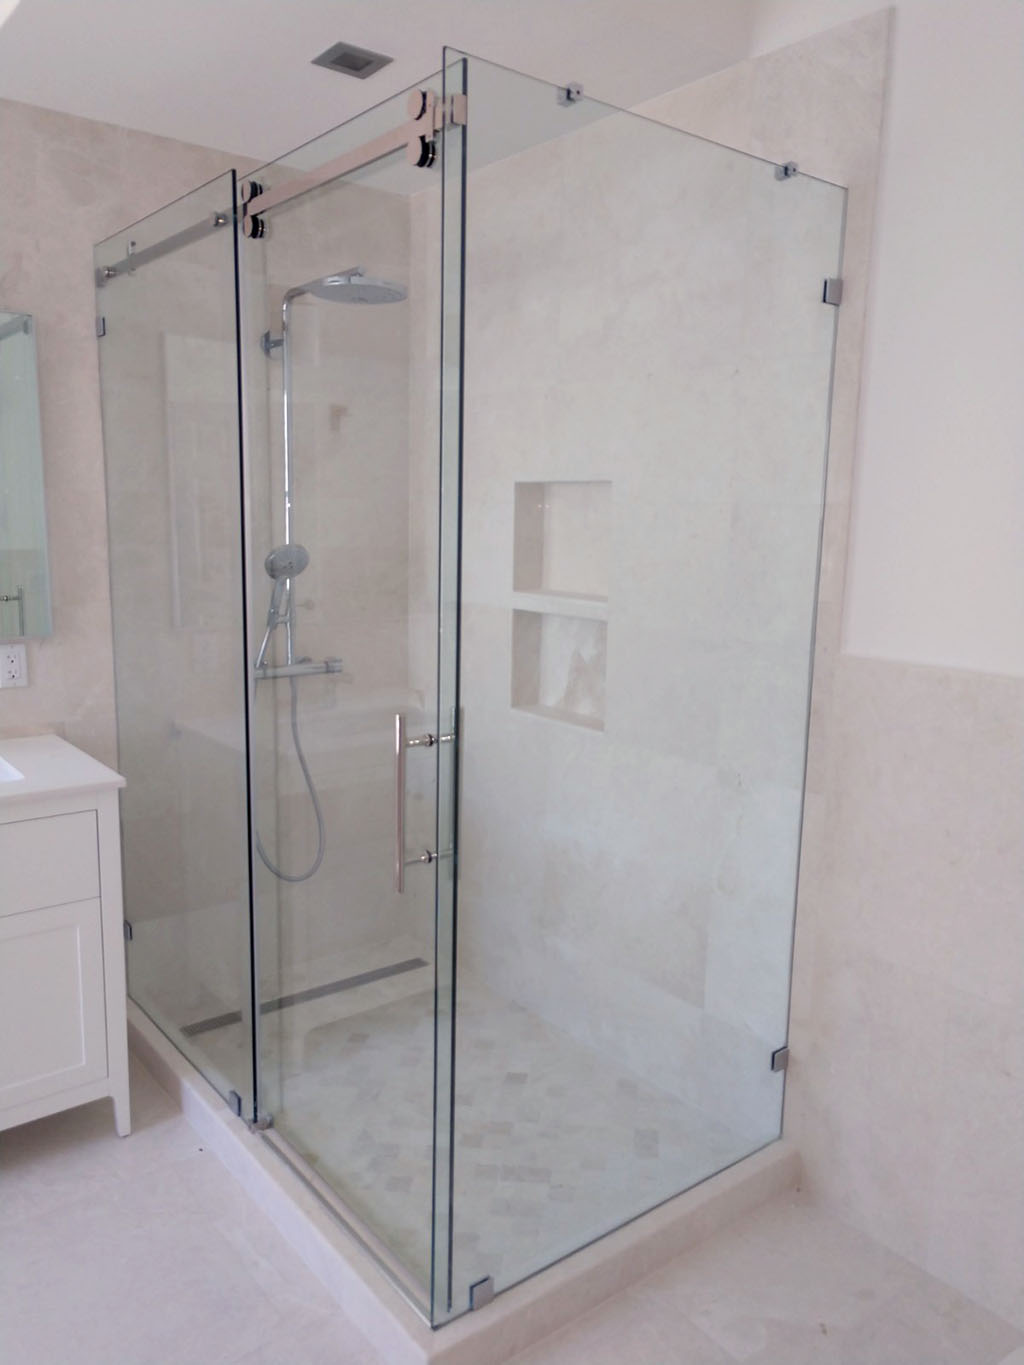 Remodeled master bathroom with sliding glass door at shower enclosure